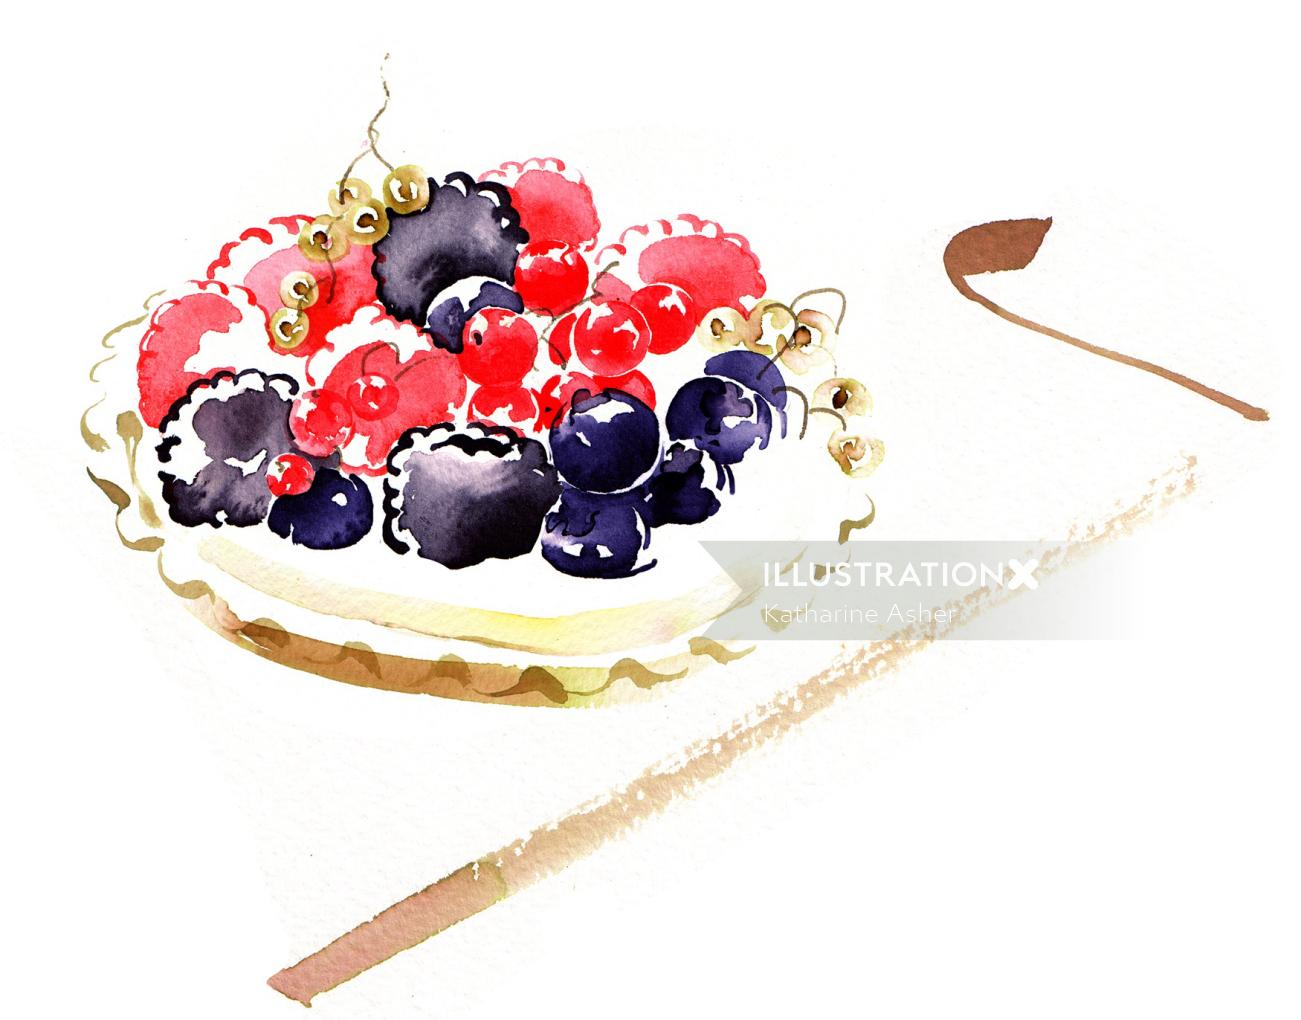 キャサリン・アッシャーによる夏の果物のイラスト